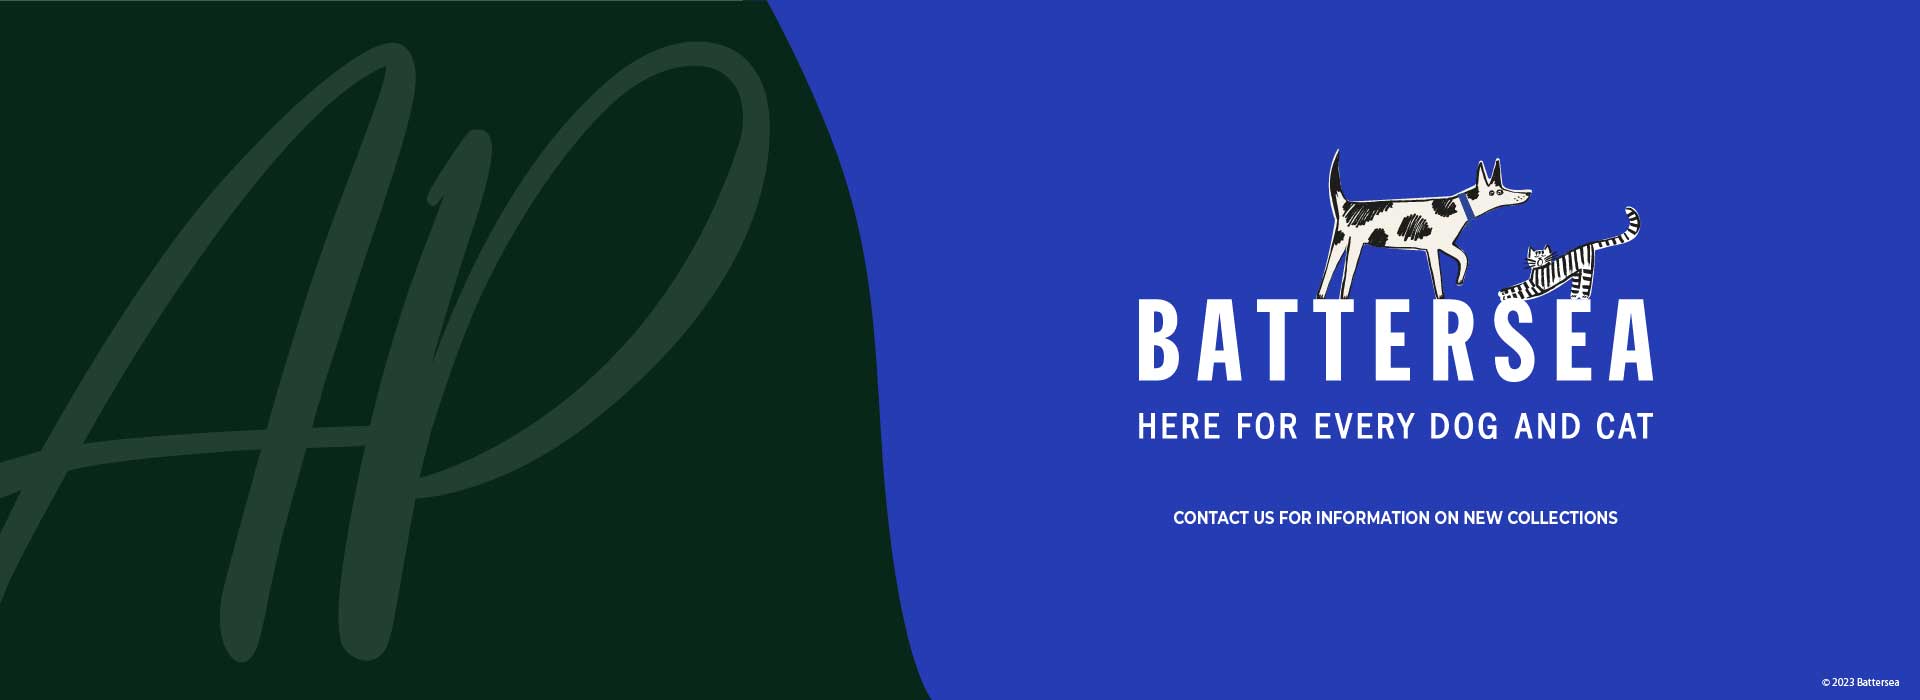 battersea-web-banner